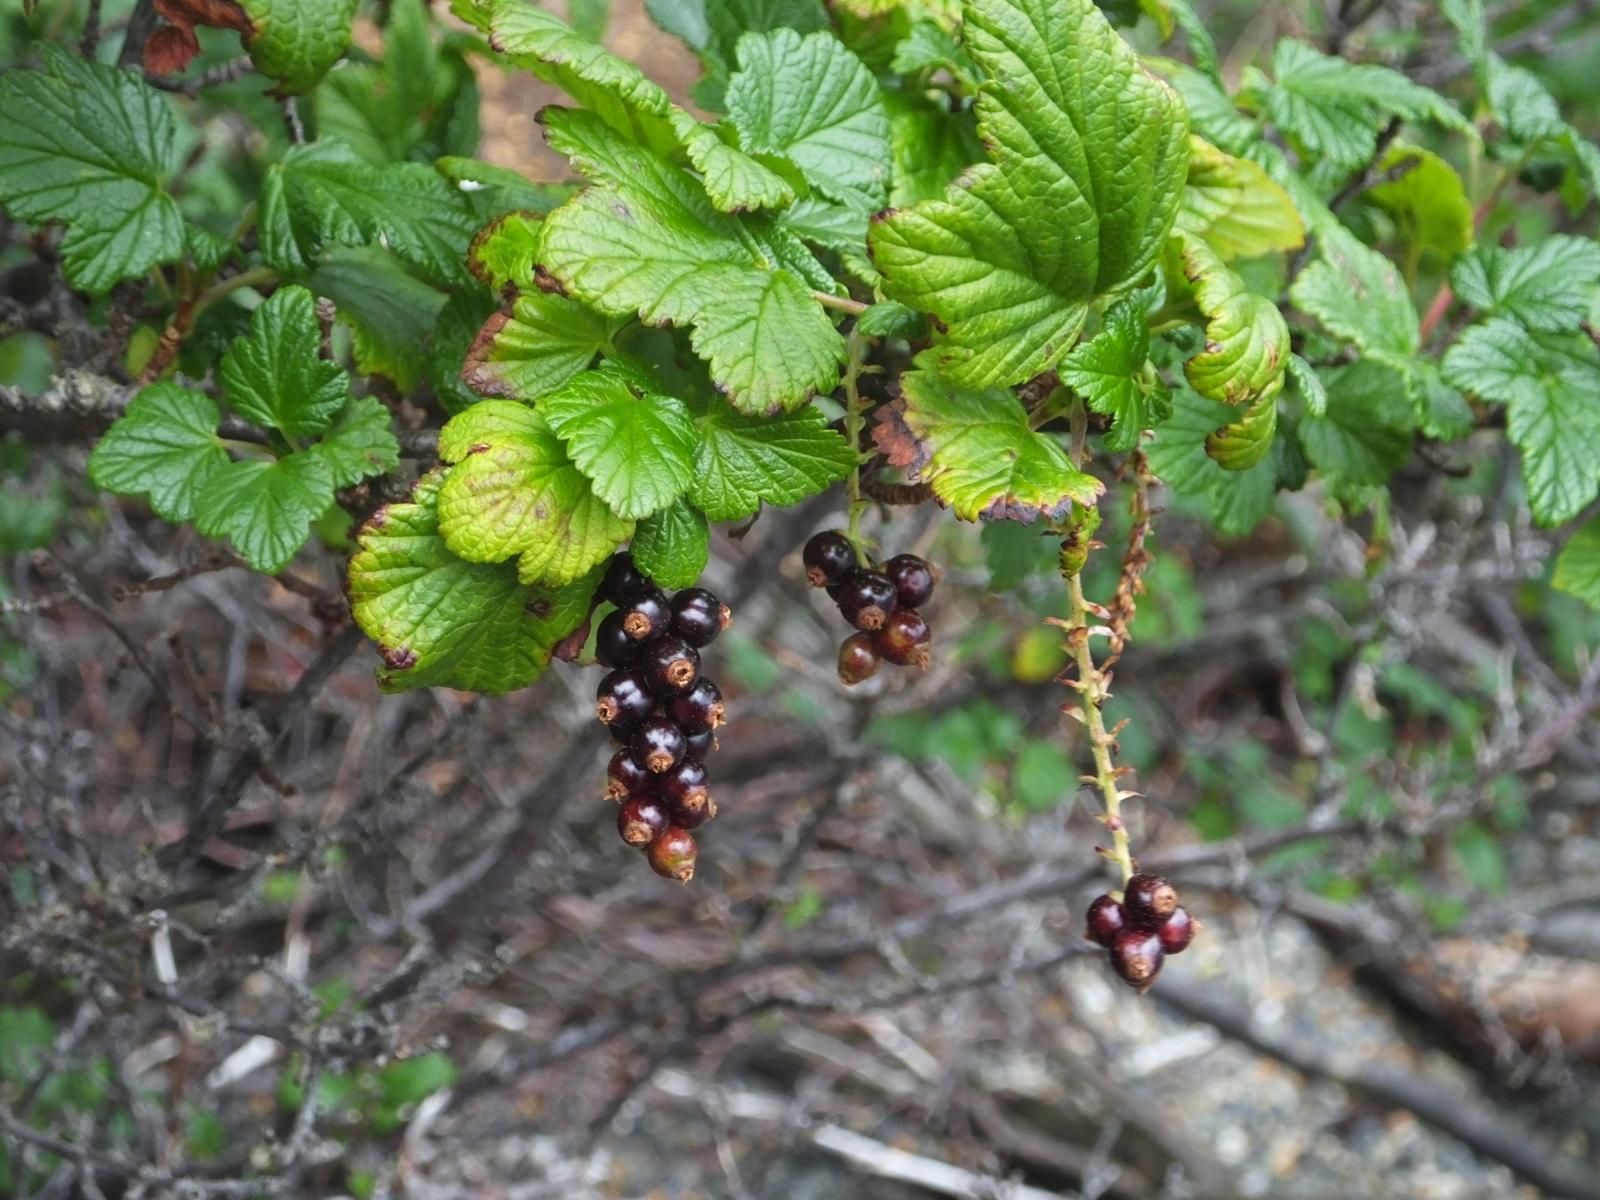 На снимке — очень характерный для лесов и болот Южной Патагонии вид ягоды. По виду листьев и ягод — ну русская черная смородина! По вкусу — можно предположить, что это её дальний дикий предок (напоминает). Здесь её называют местным эндемиком, лекарственным растением zarzaparrilla (Ribes magellanicum).